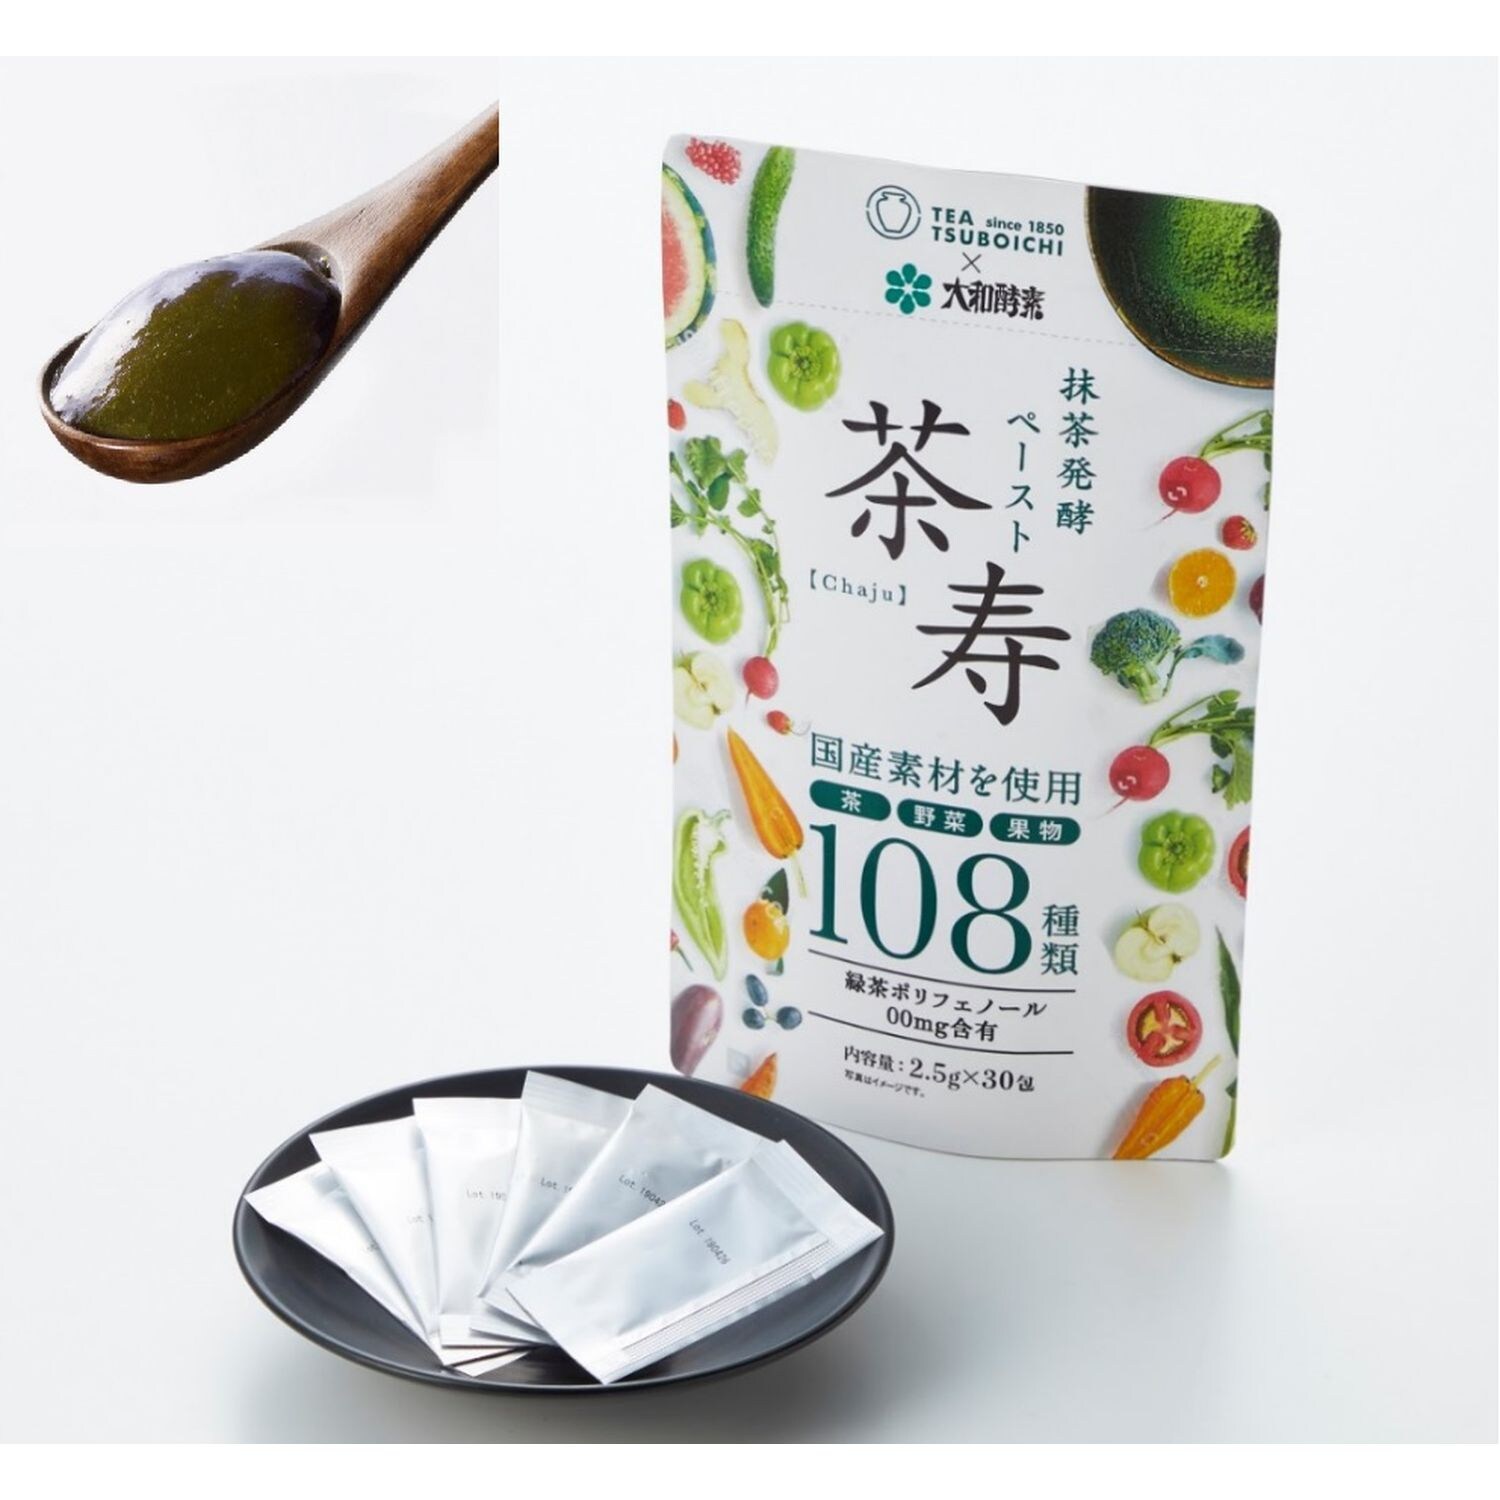 【ベルメゾン】【フードロス対策】抹茶発酵ペースト「茶寿」 2.5g×30袋(賞味期限2023年2月17日)